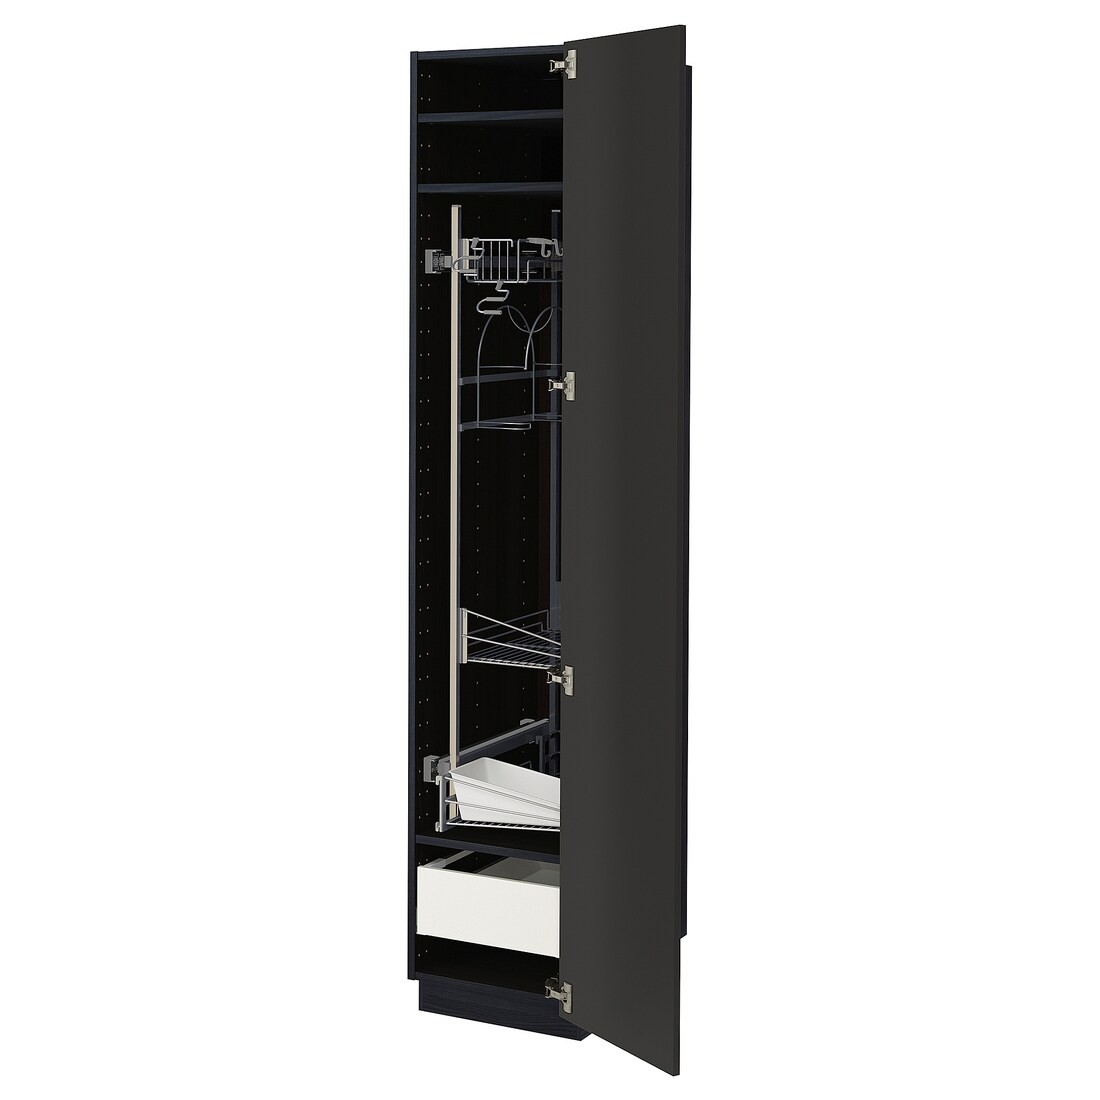 METOD МЕТОД / MAXIMERA МАКСИМЕРА Высокий шкаф с отделением для аксессуаров для уборки, черный / Nickebo матовый антрацит, 40x60x200 см